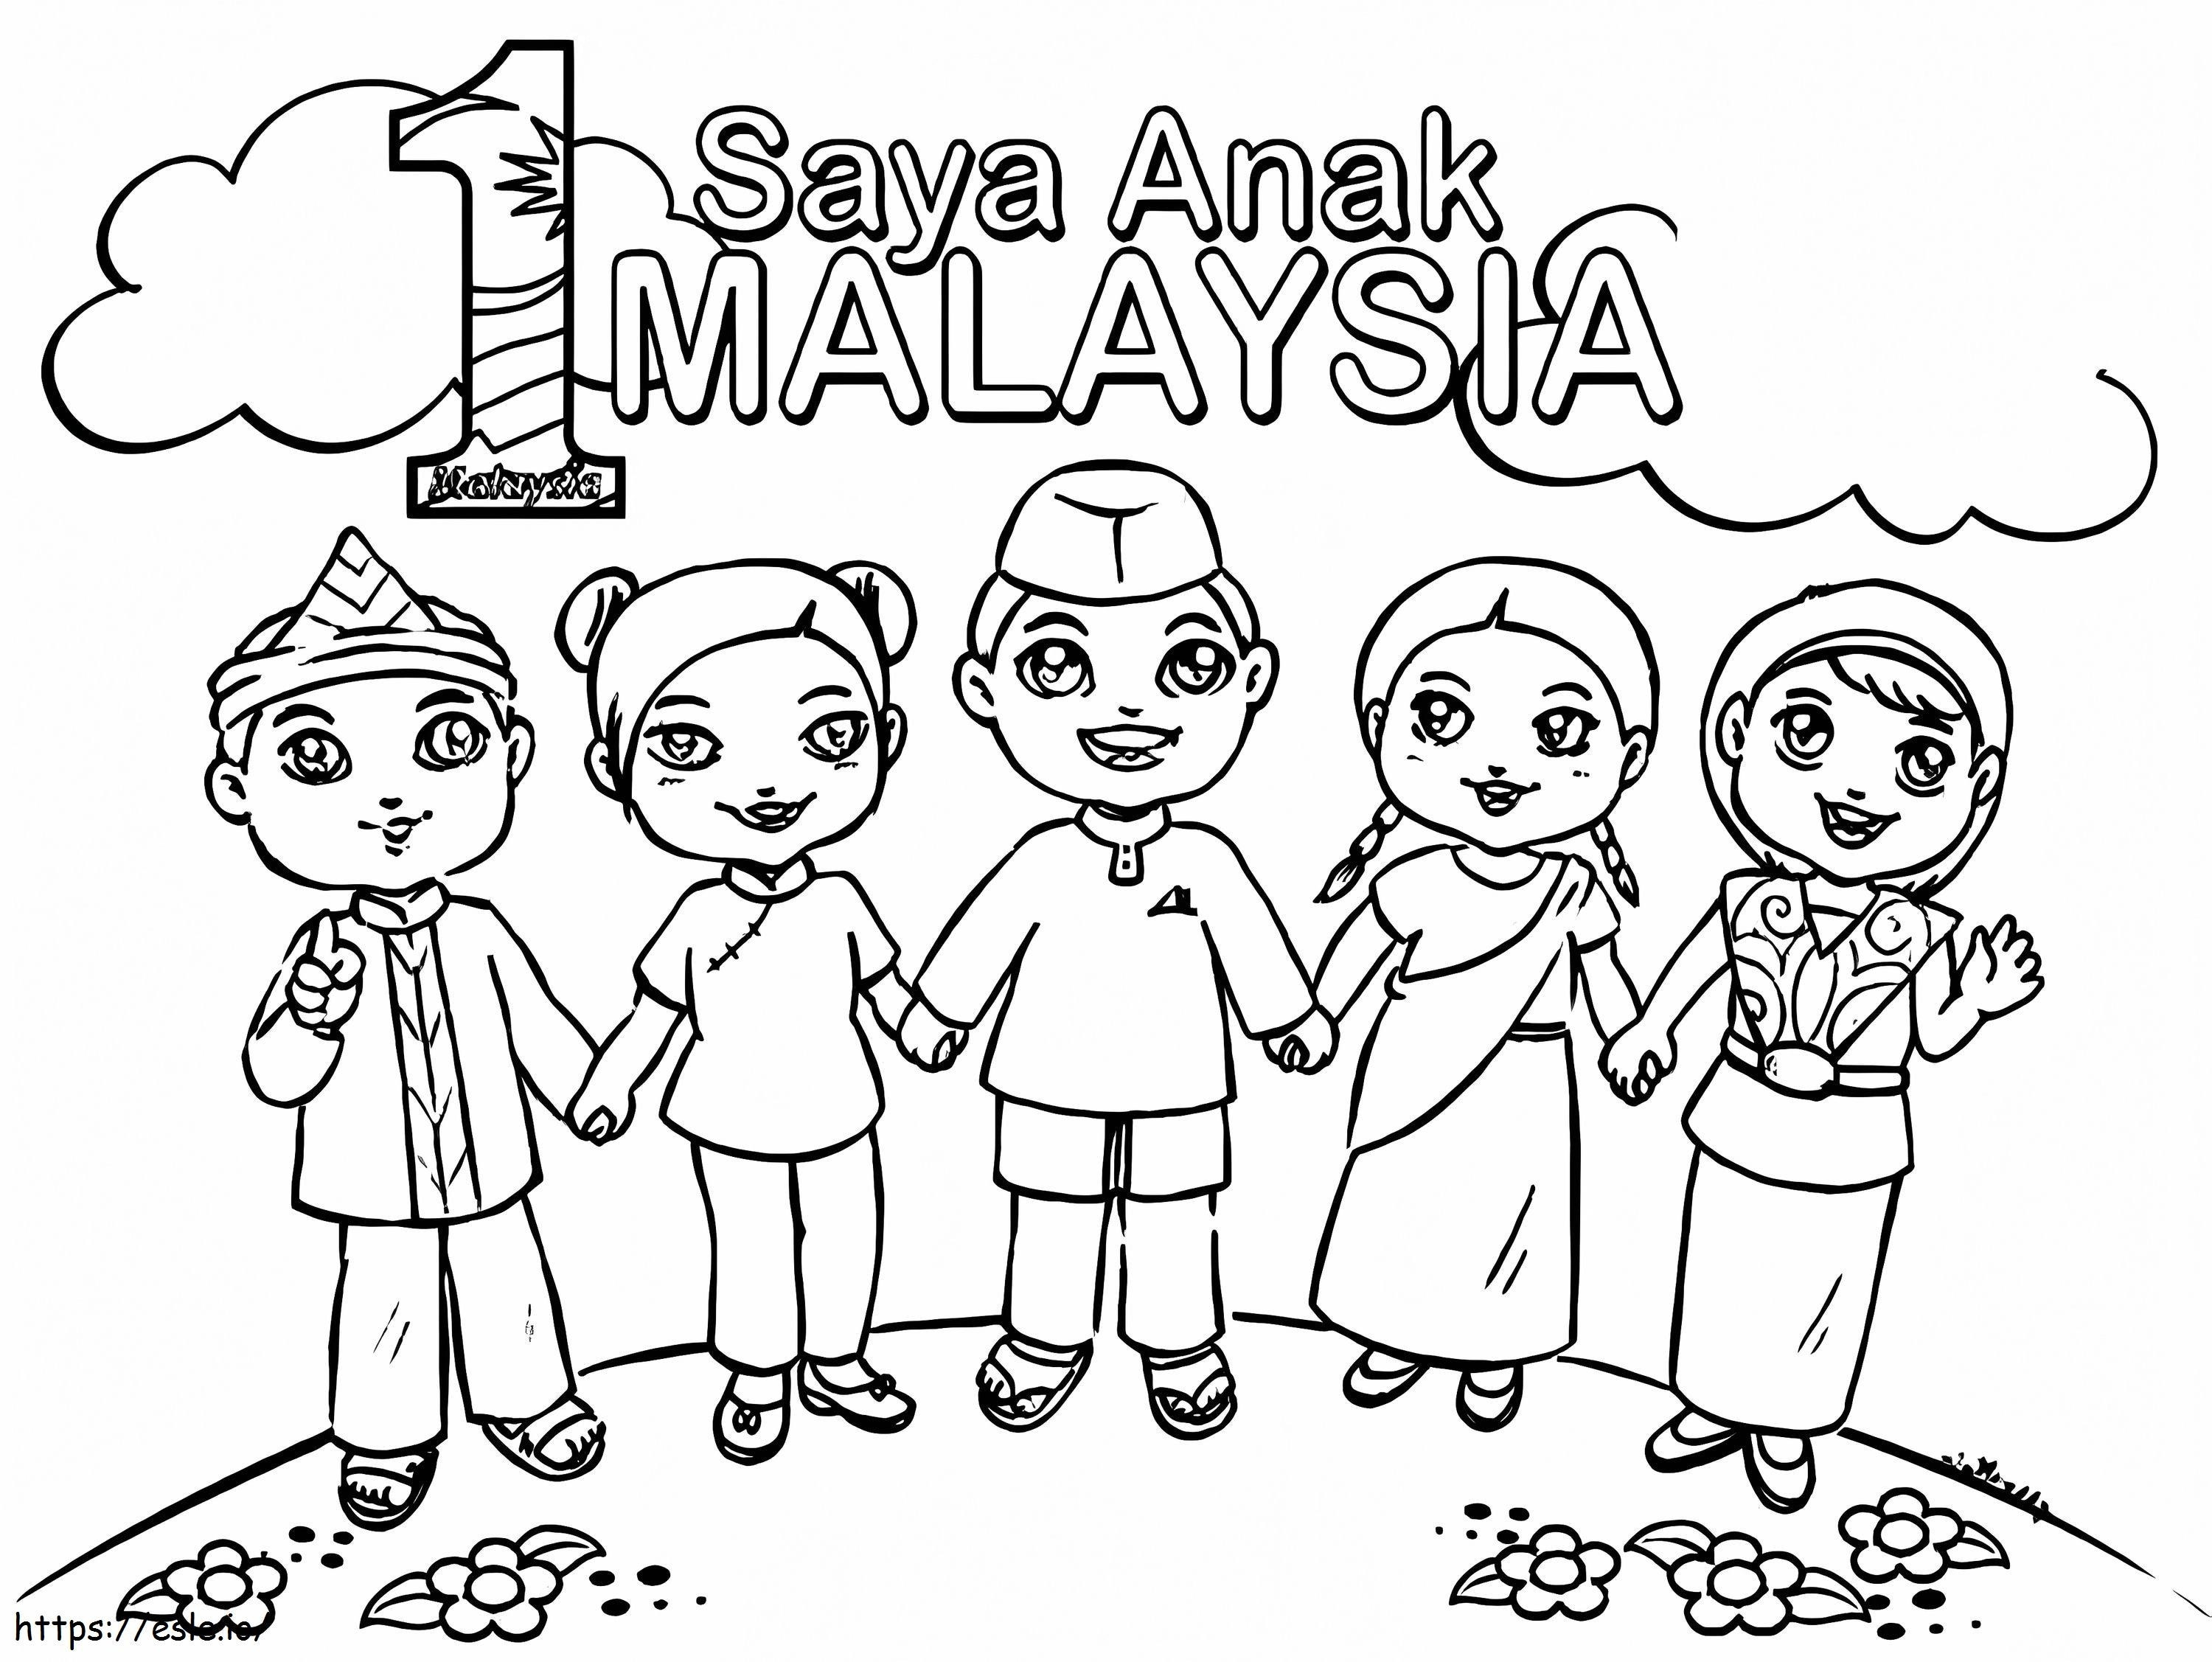 Copii din Malaezia de colorat